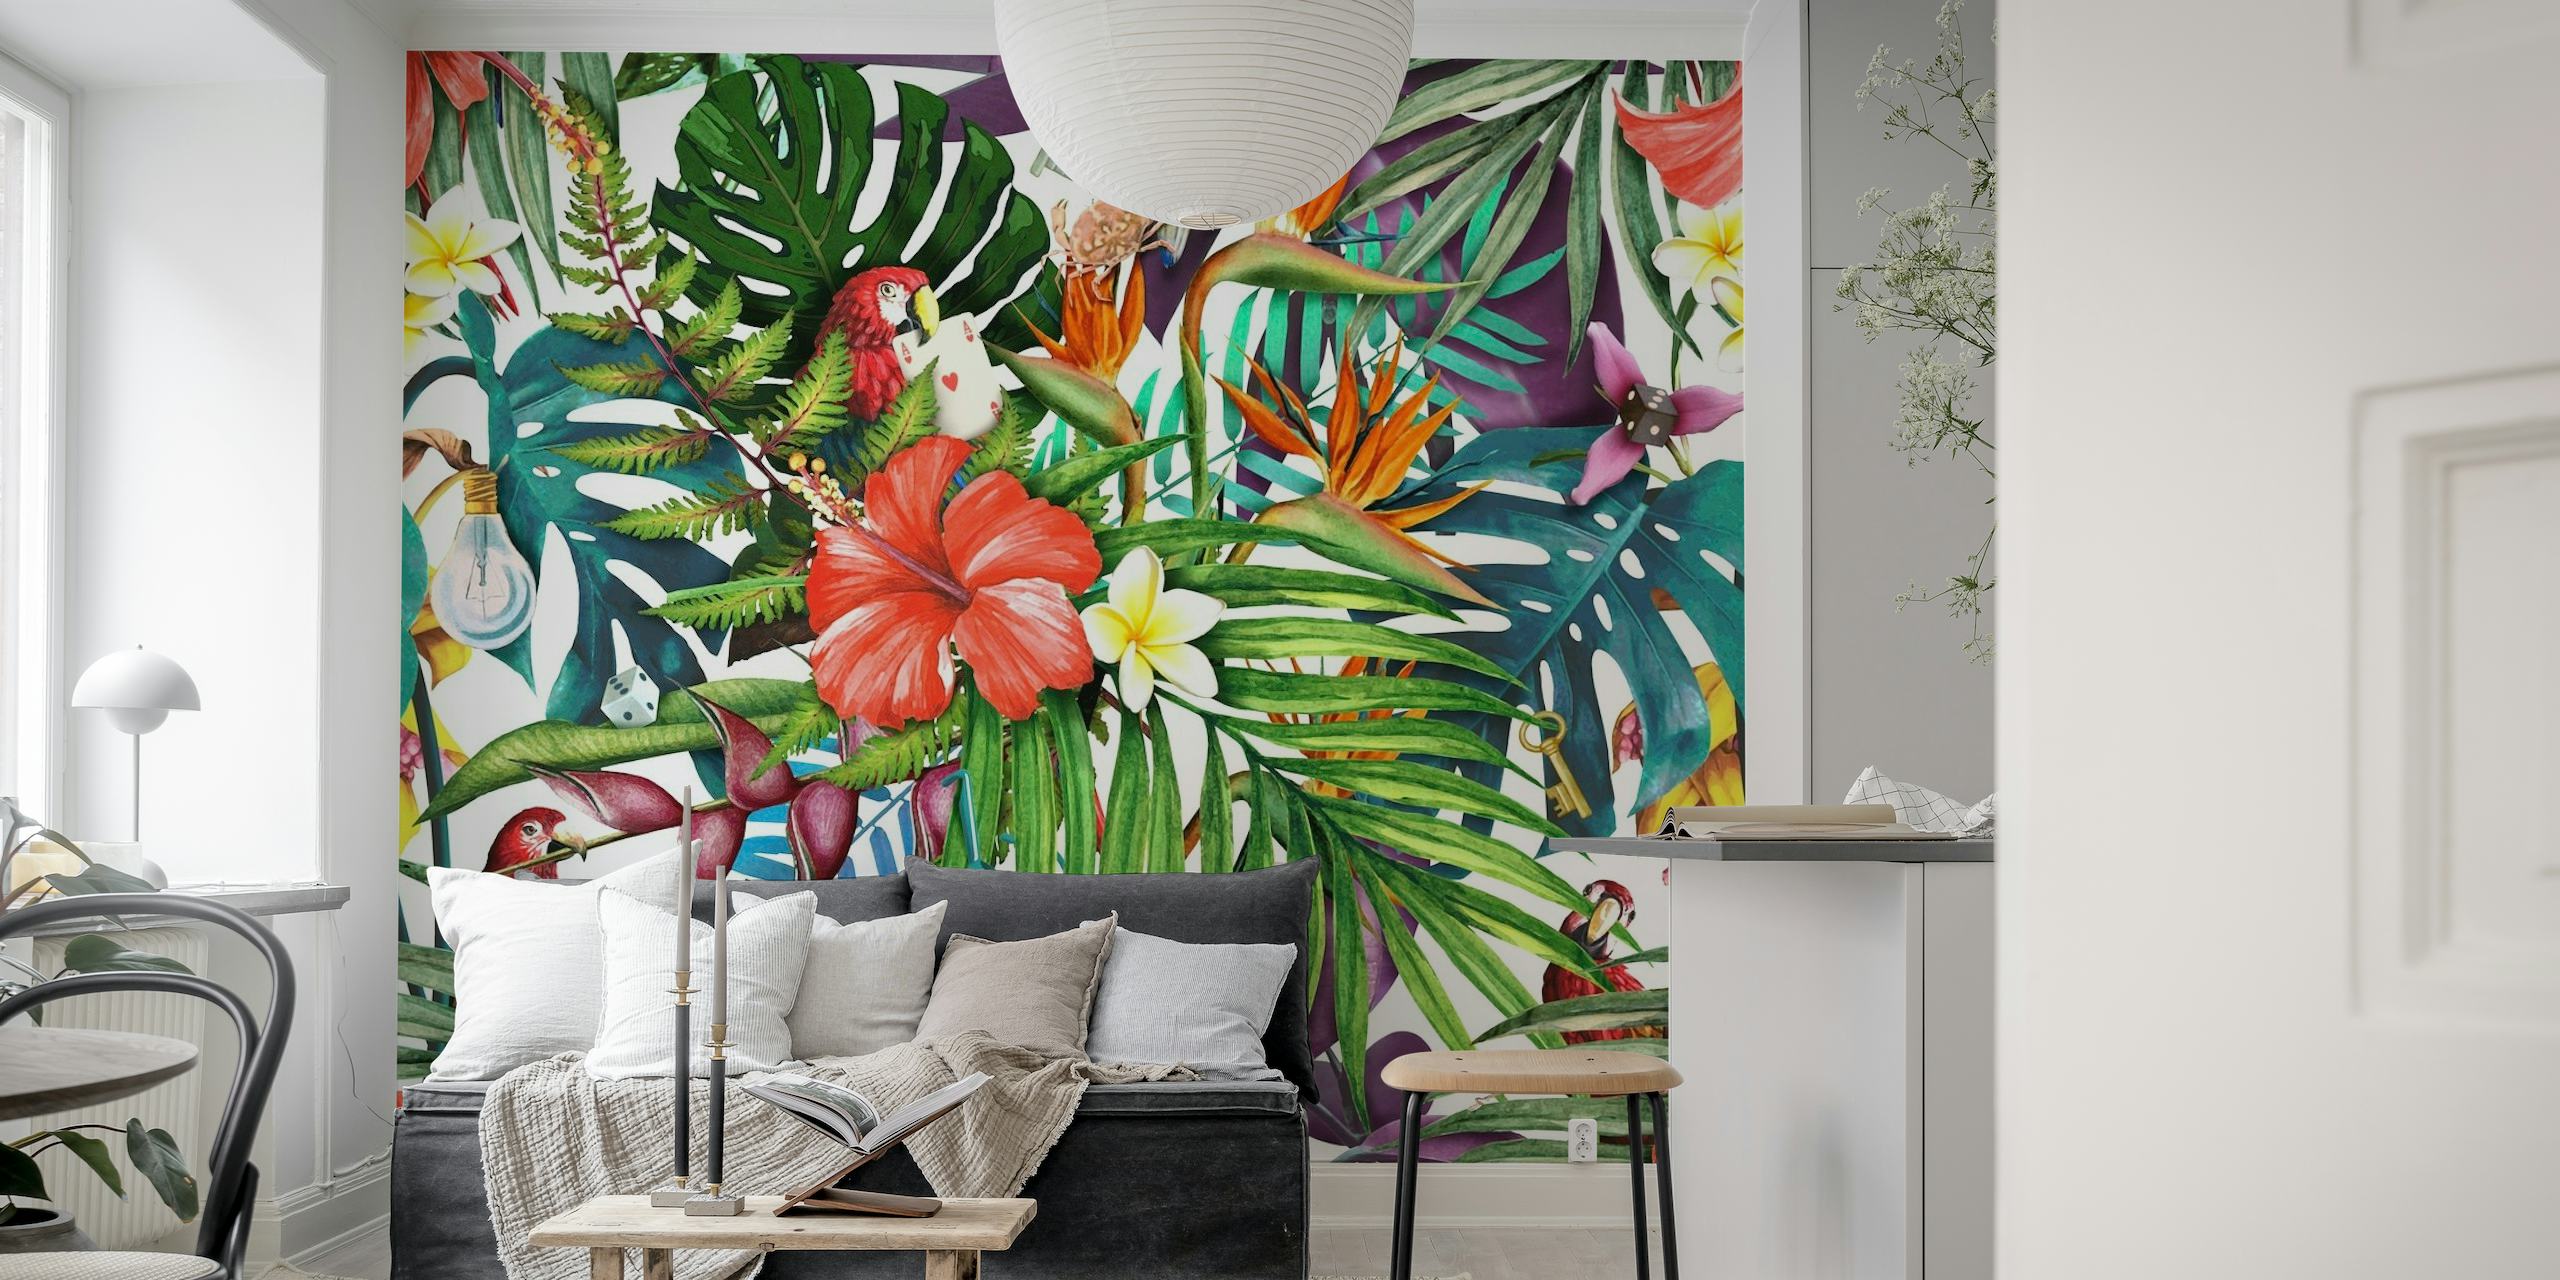 Zidna slika tropske džungle sa živopisnim cvijećem i bujnim lišćem